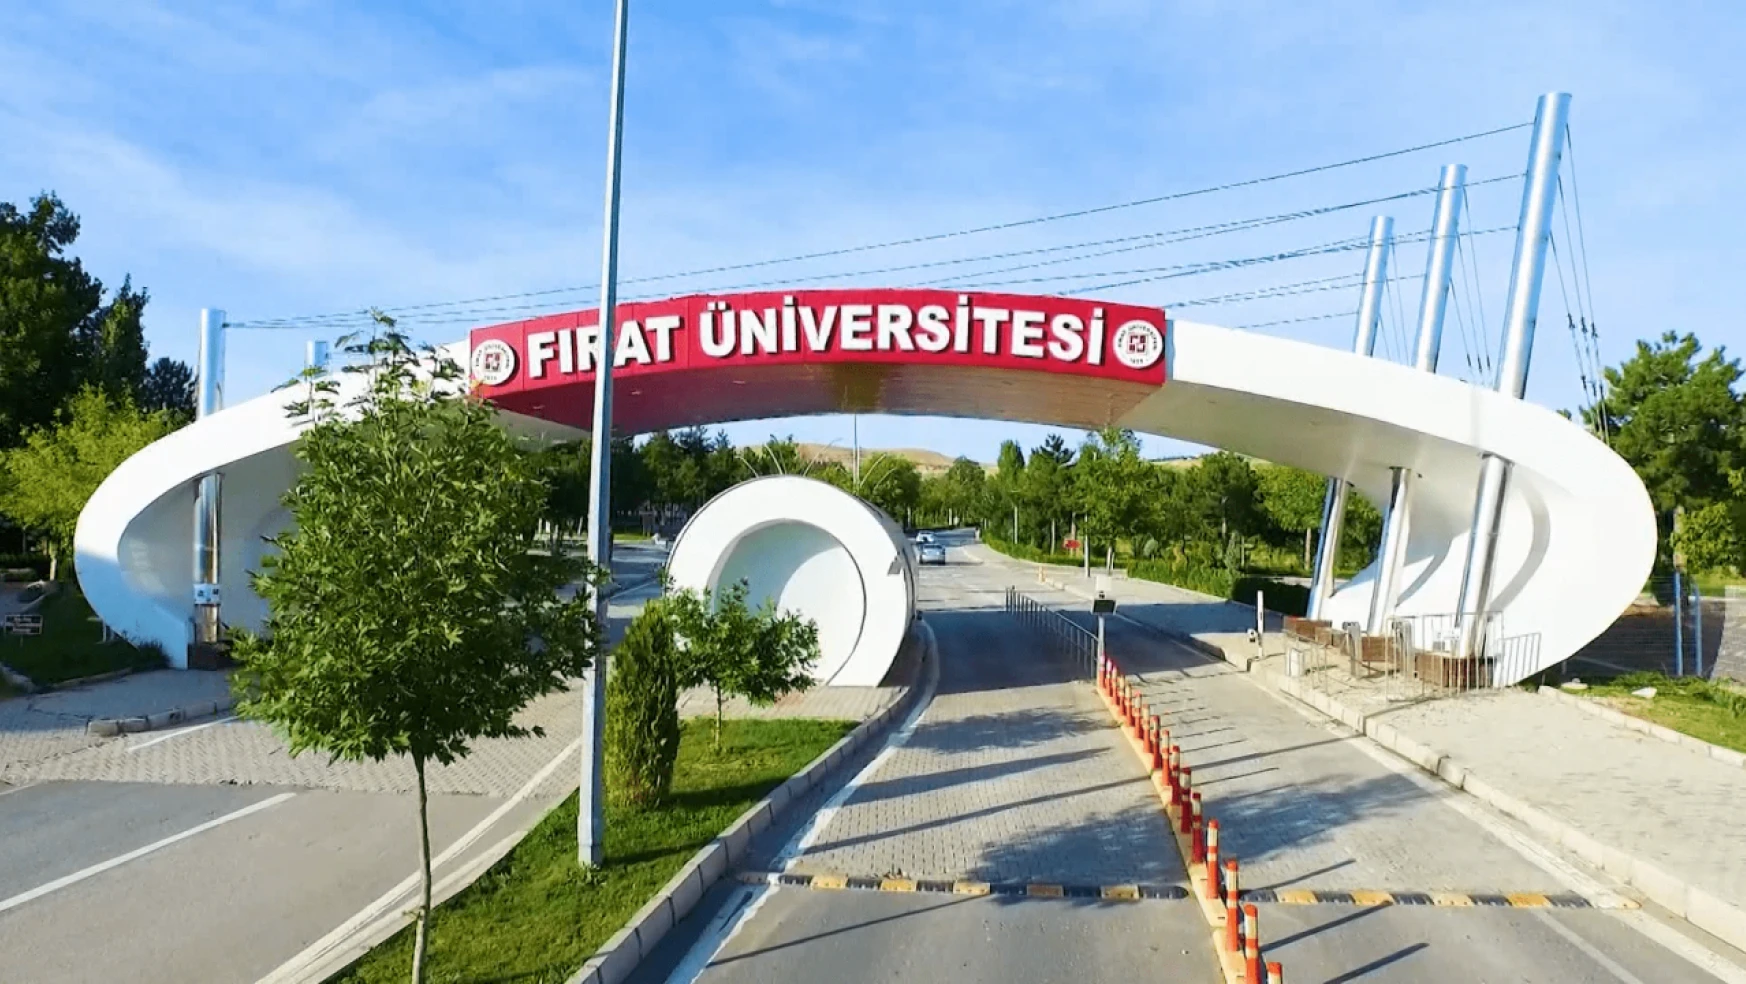 Fırat Üniversitesi İsrail'e destek veren markaları boykot kararı aldı